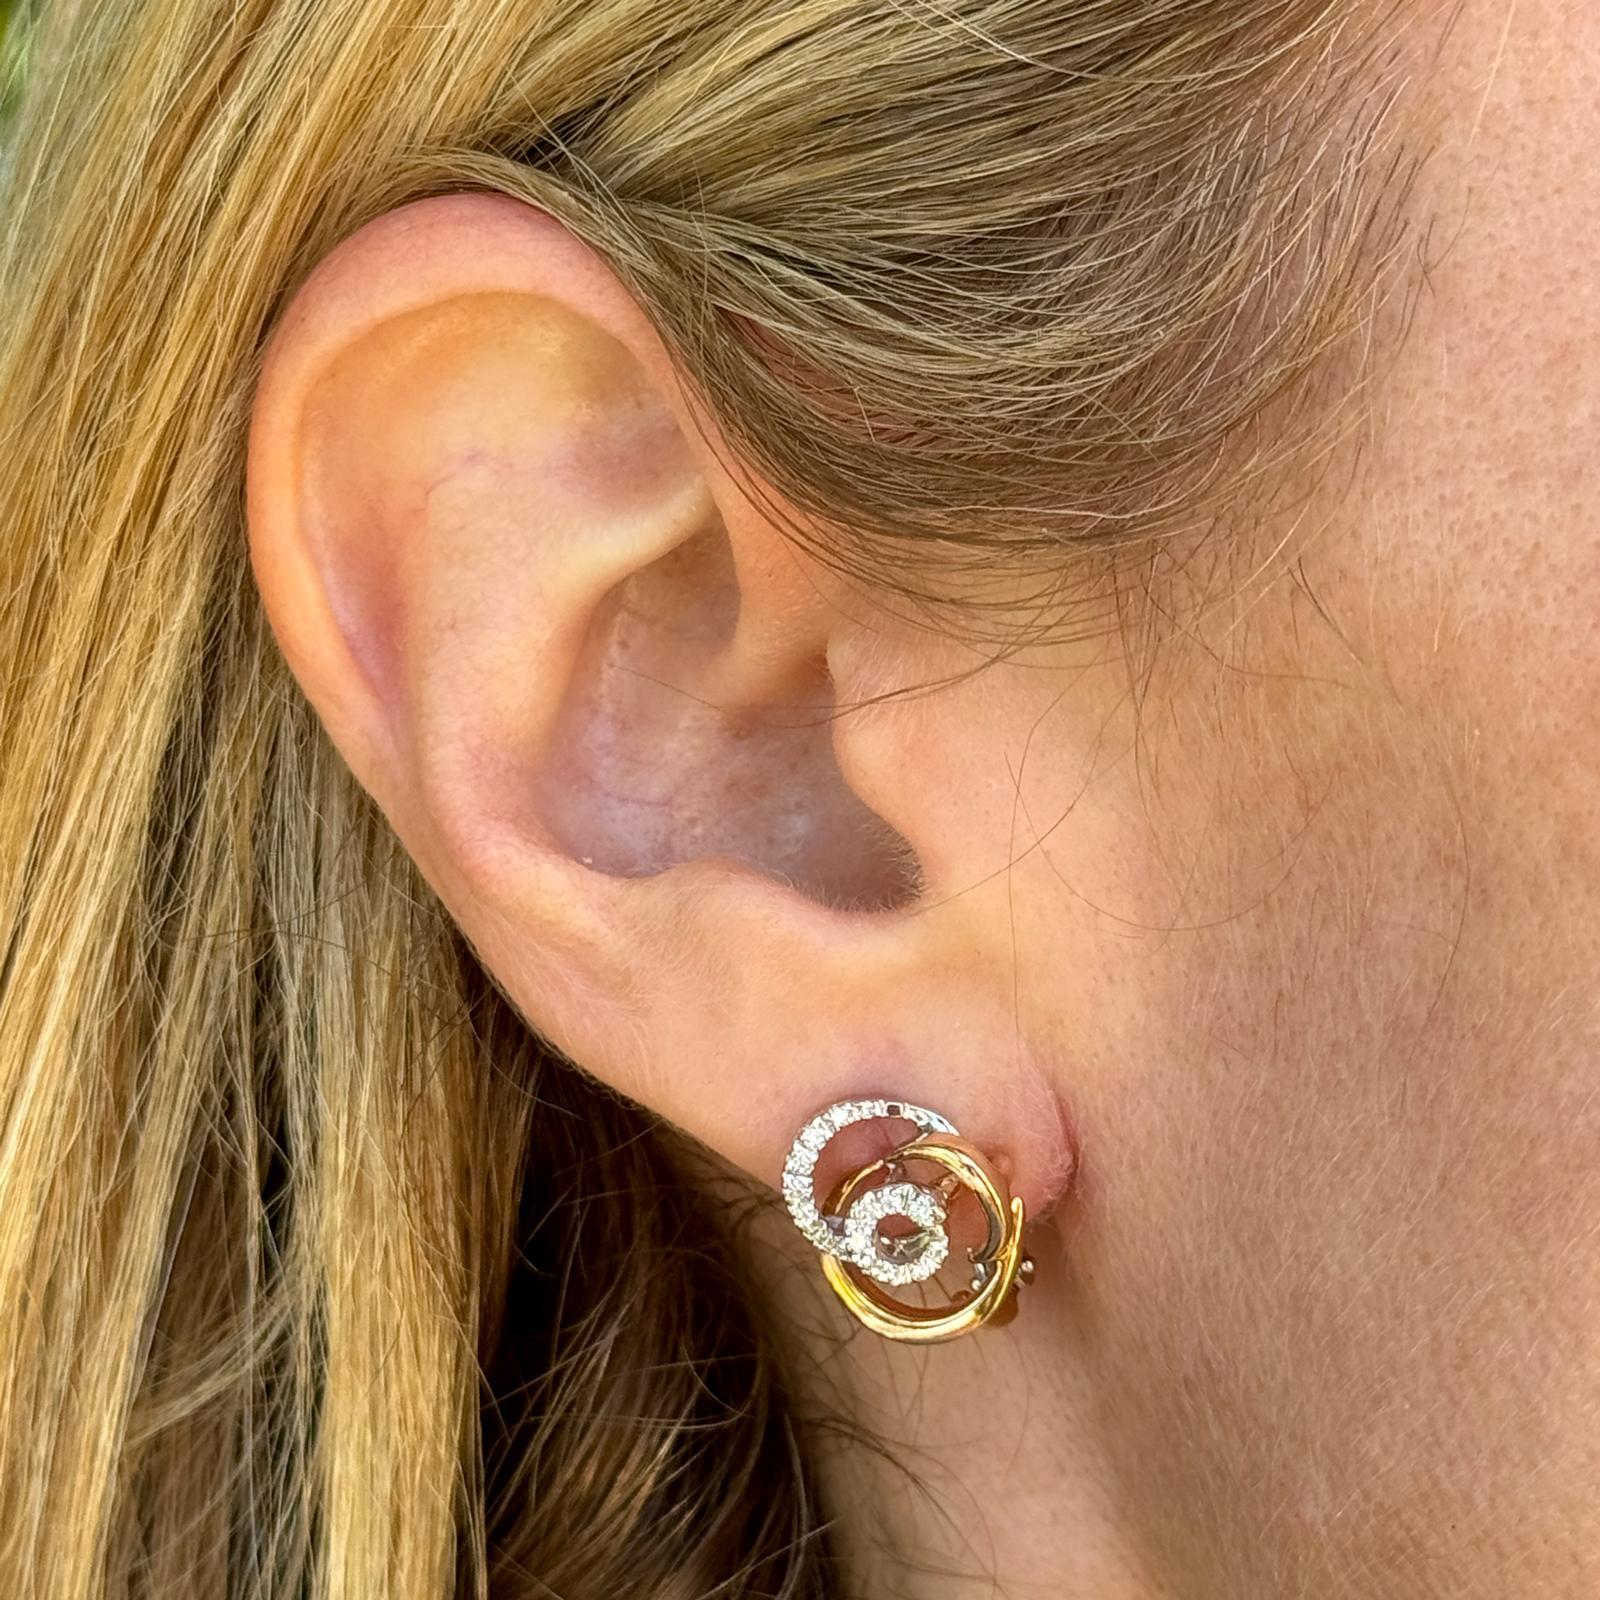 Die Diamond Swirl Ohrstecker aus zweifarbigem Gold von Damiani sind ein schillerndes und raffiniertes Paar Ohrringe, das die Kompetenz der Marke in Sachen Schmuckhandwerk und Design unter Beweis stellt. Die Ohrringe haben ein kreisrundes